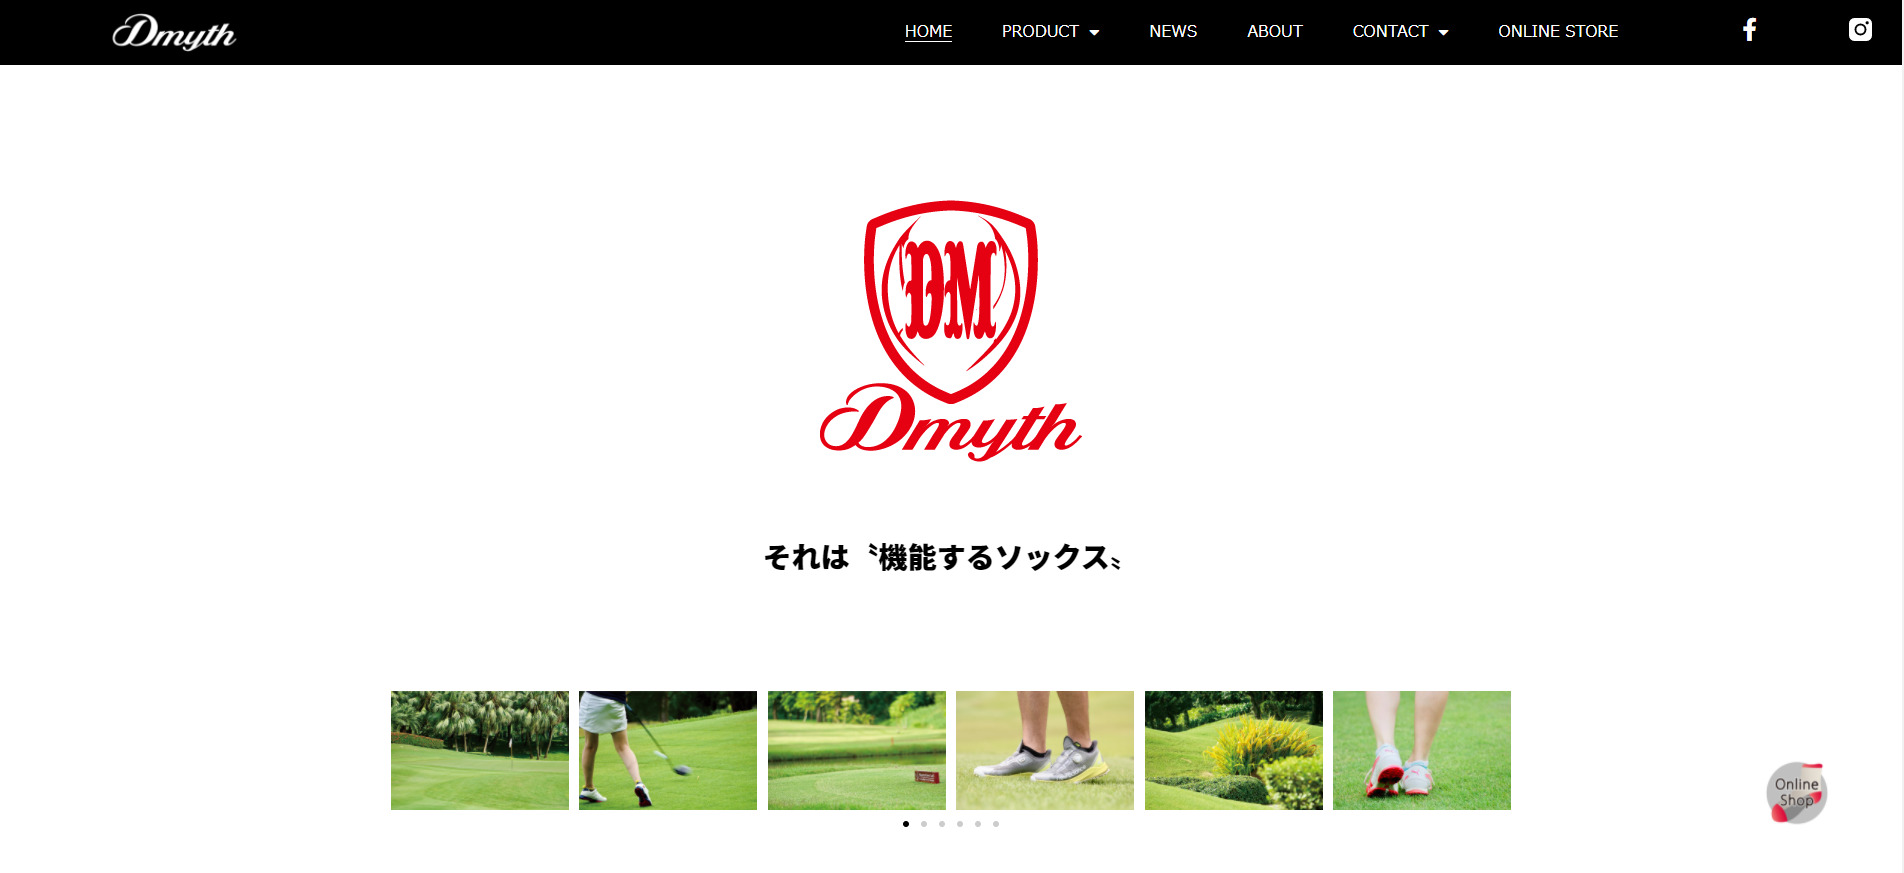 D-myth様　ブランドサイト制作